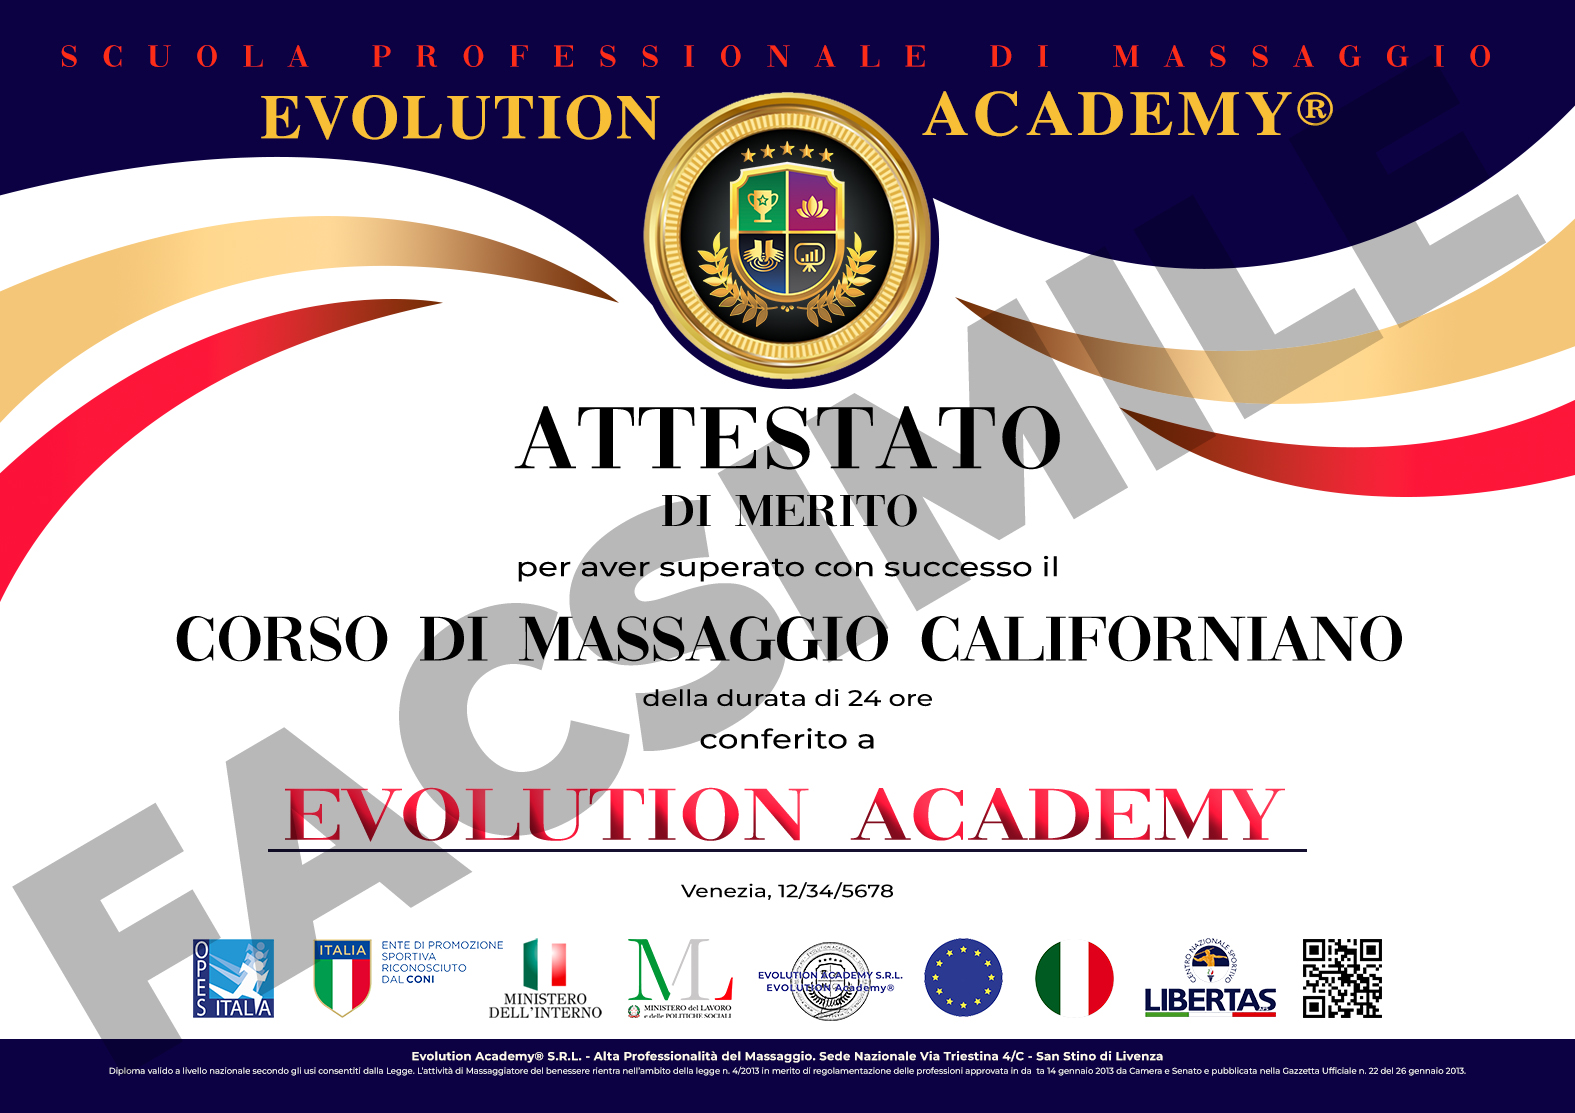 Attestato Evolution Academy® di massaggio californiano